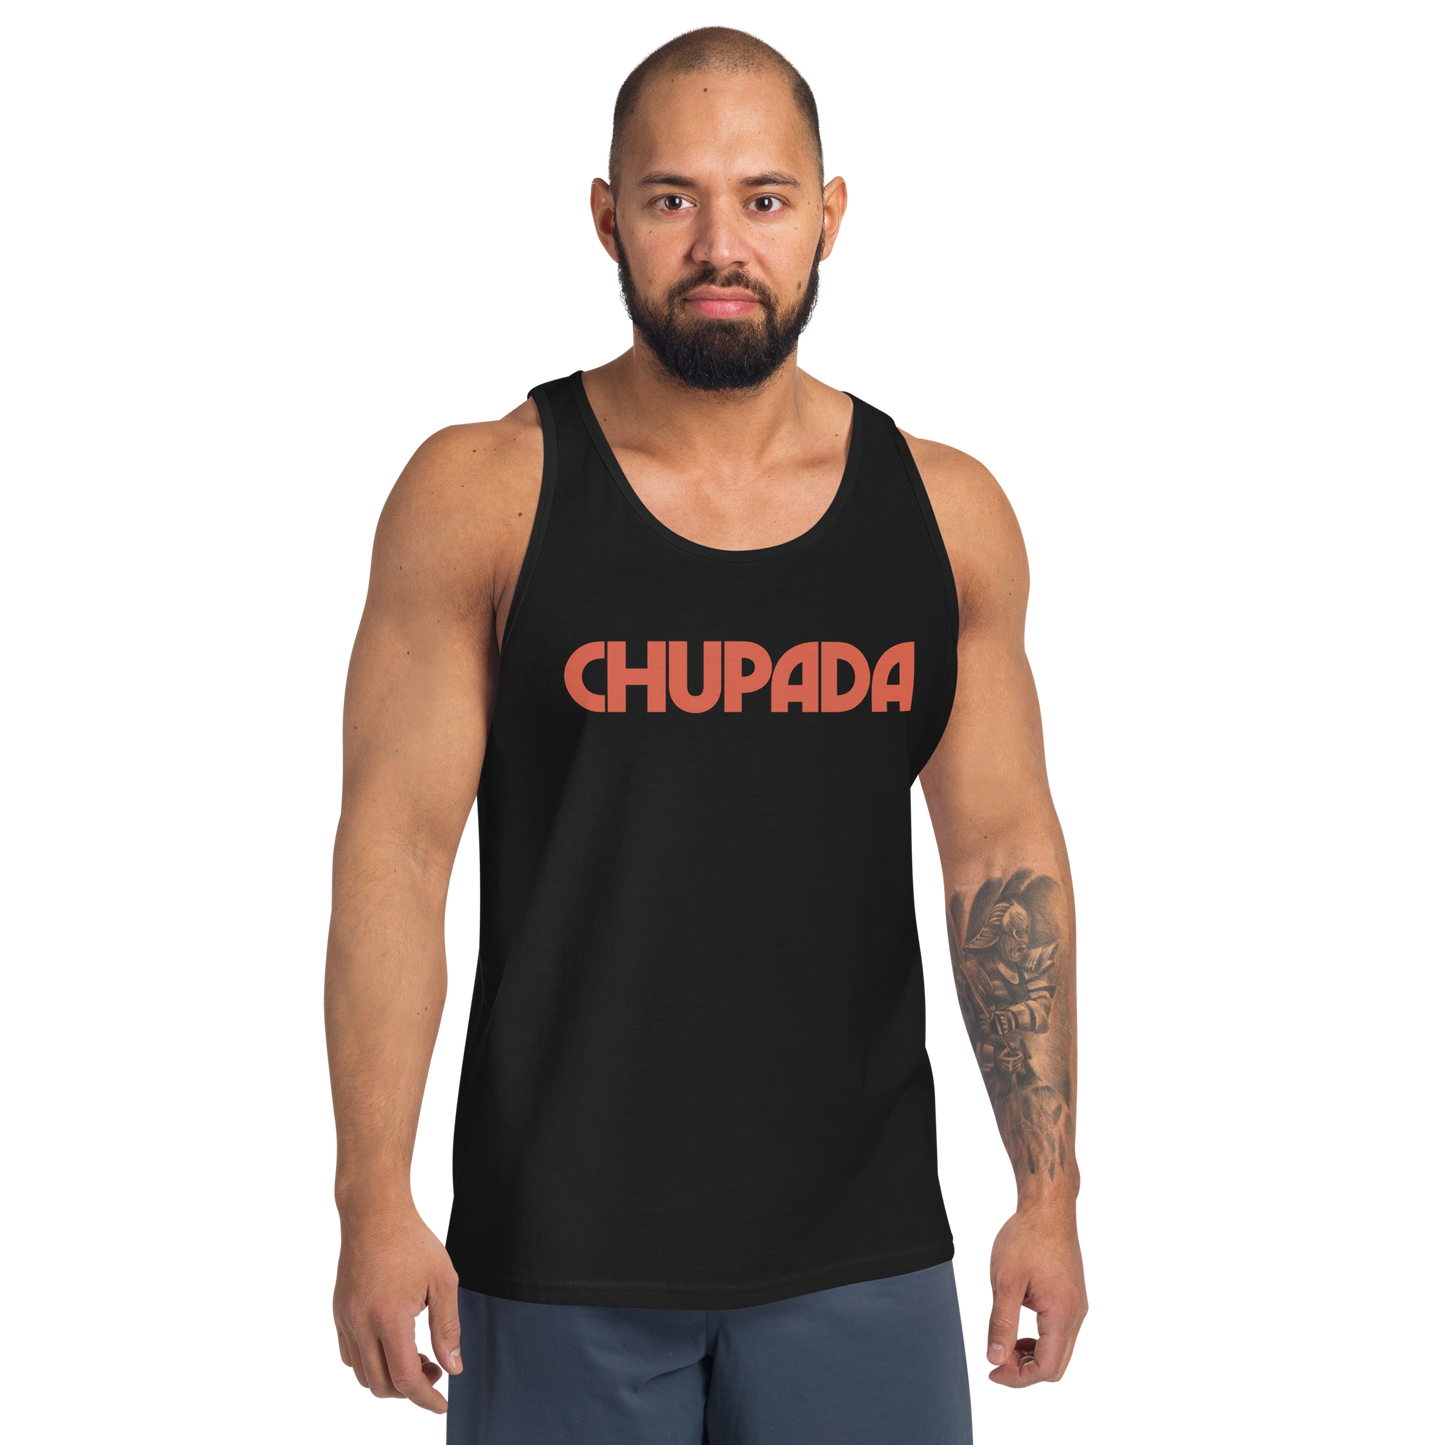 CHUPADA Tank Top